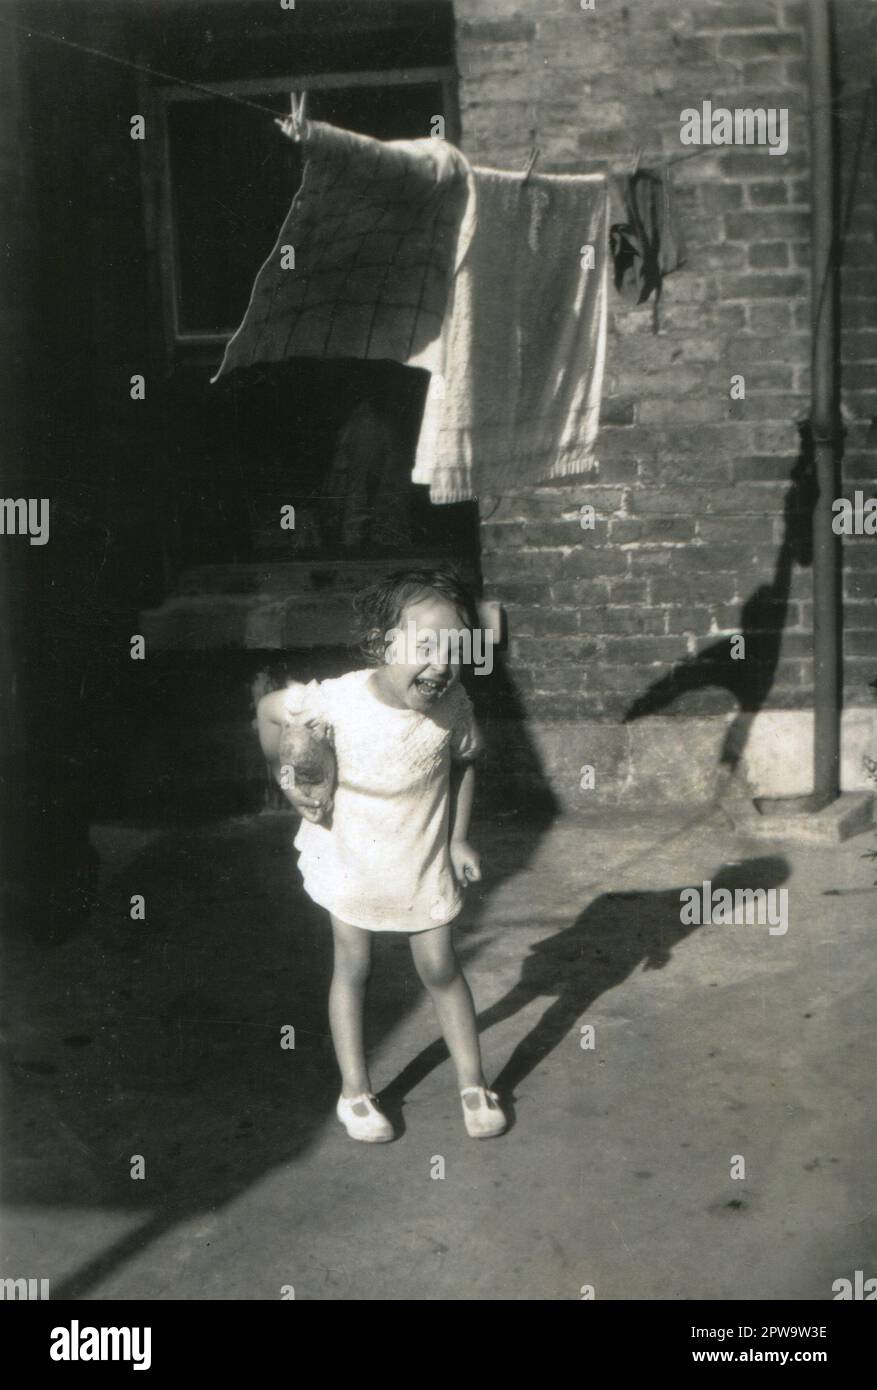 England.1930er. Ein bezauberndes Foto, das ein Kleinkind darstellt. Das junge Mädchen, das ein weißes Kleid und Sandalen trägt, steht in einem Hinterhof, klammert sich ein weiches Spielzeug unter den Arm und lacht. Handtücher und Kleidung trocknen an einer Wäscheleine über ihrem Kopf. Stockfoto